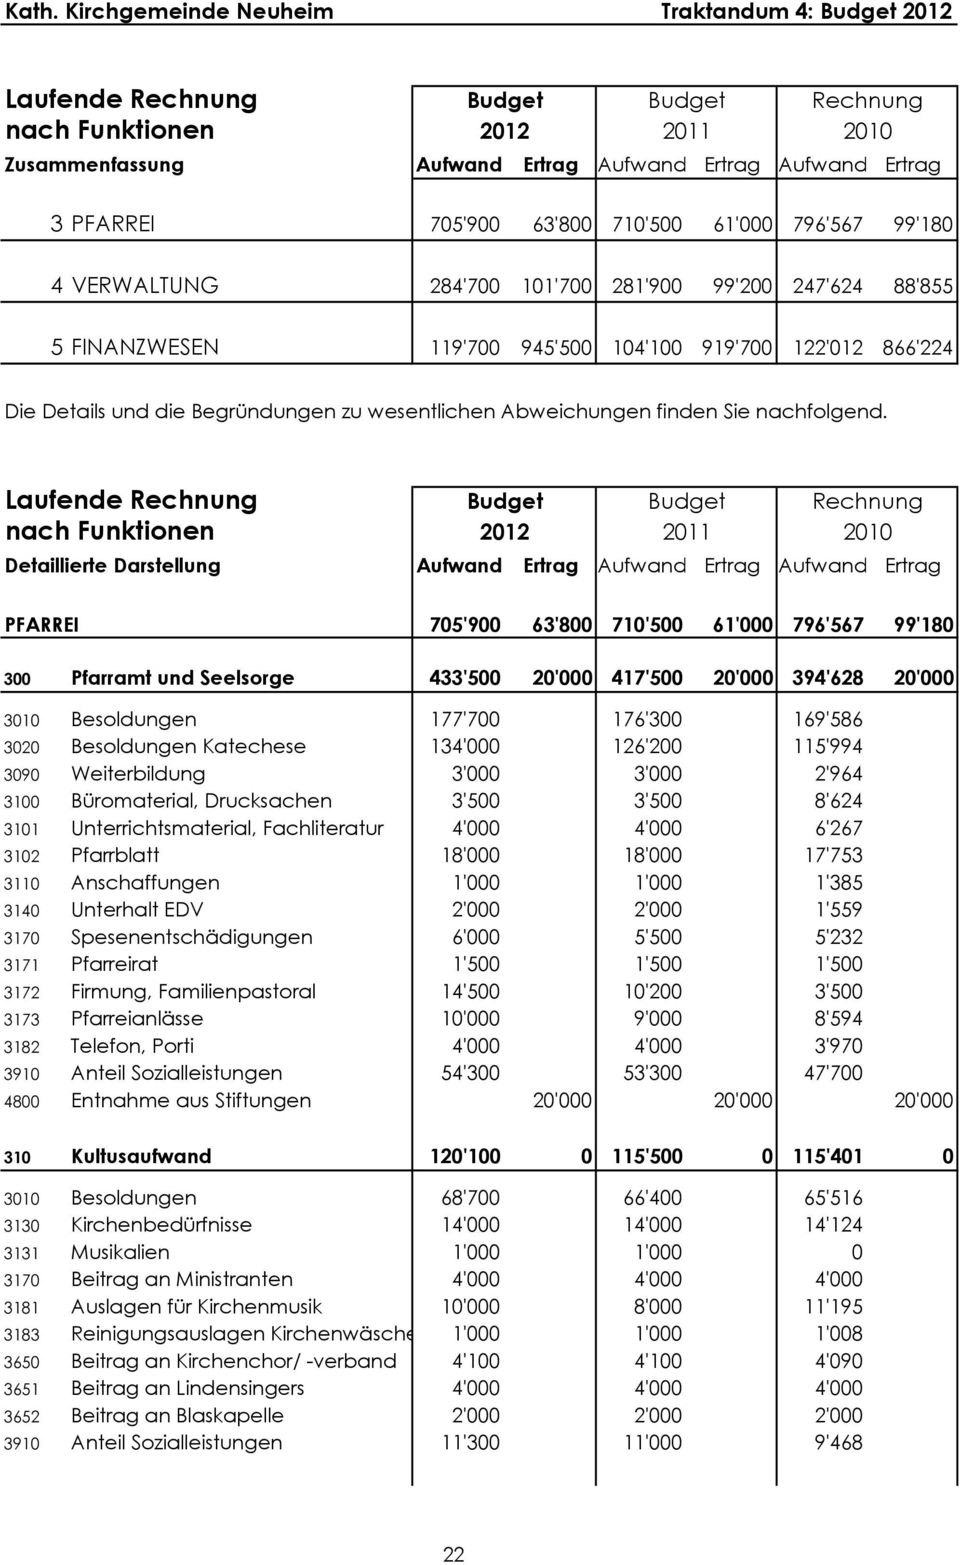 Laufende Rechnung nach Funktionen Budget 2012 Budget 2011 Rechnung 2010 Detaillierte Darstellung Aufwand Ertrag Aufwand Ertrag Aufwand Ertrag PFARREI 705'900 63'800 710'500 61'000 796'567 99'180 300